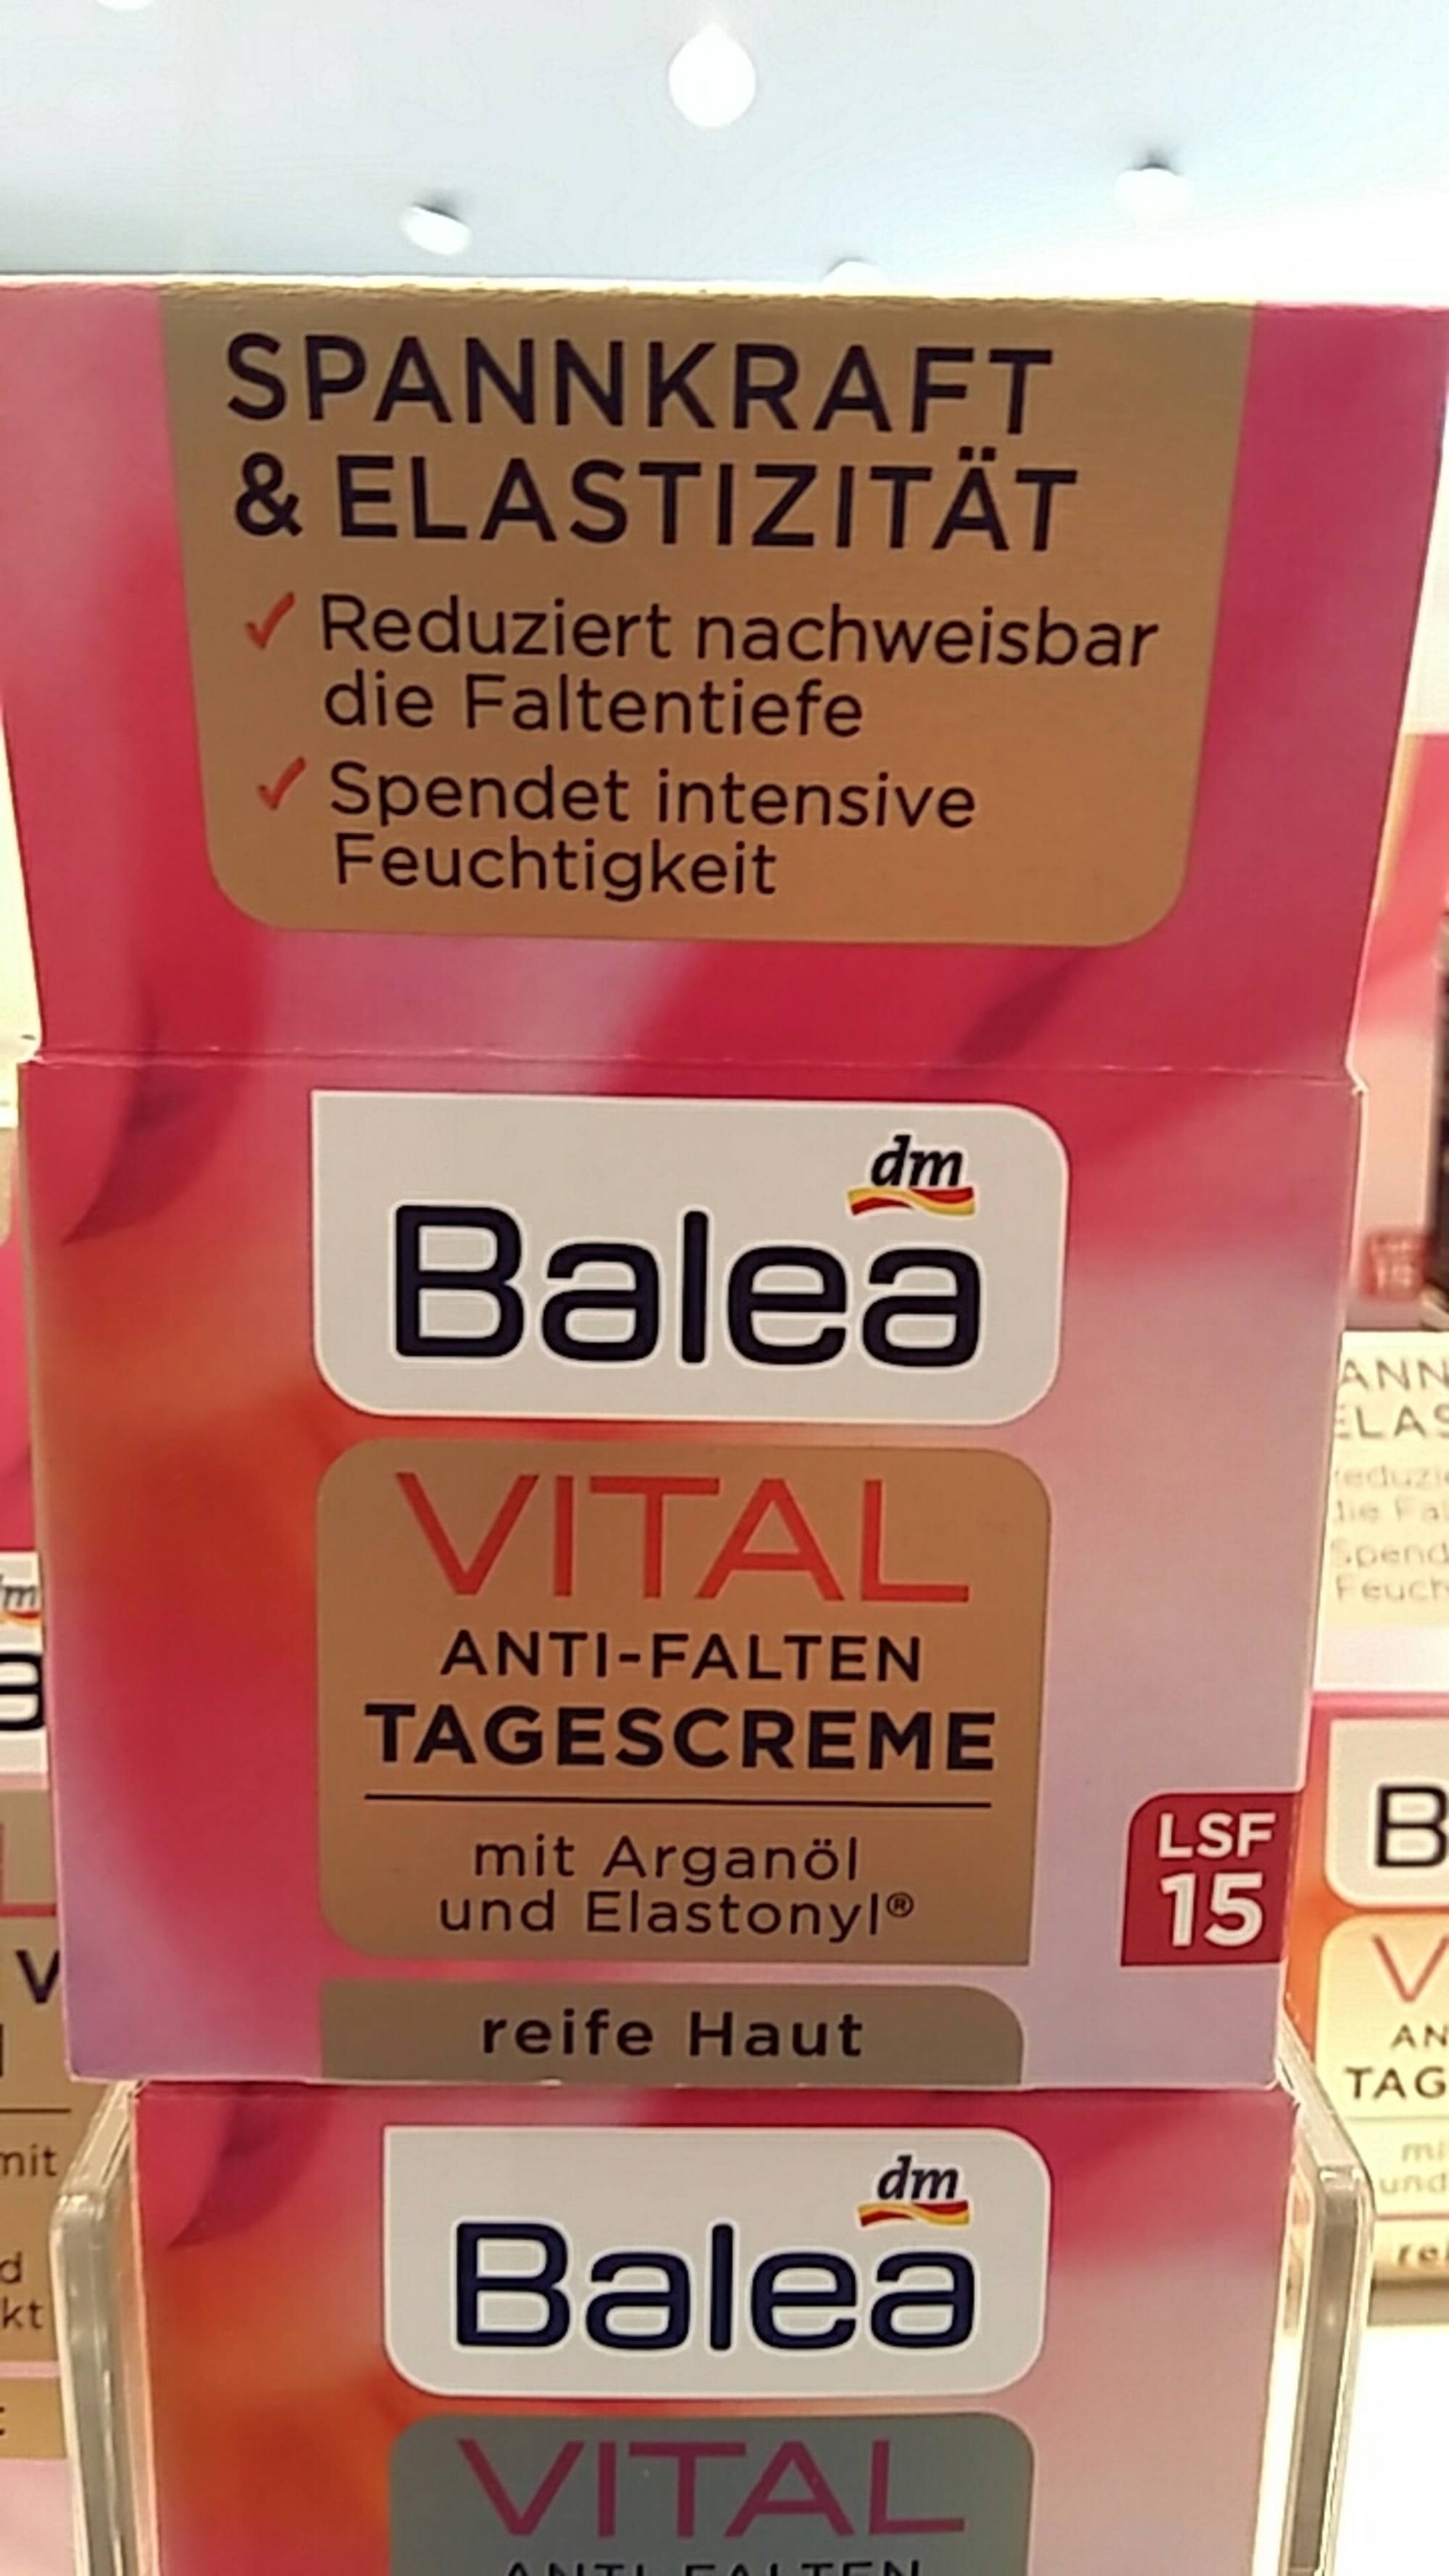 DM - Balea - Vital anti-falten tagescreme LSF 15